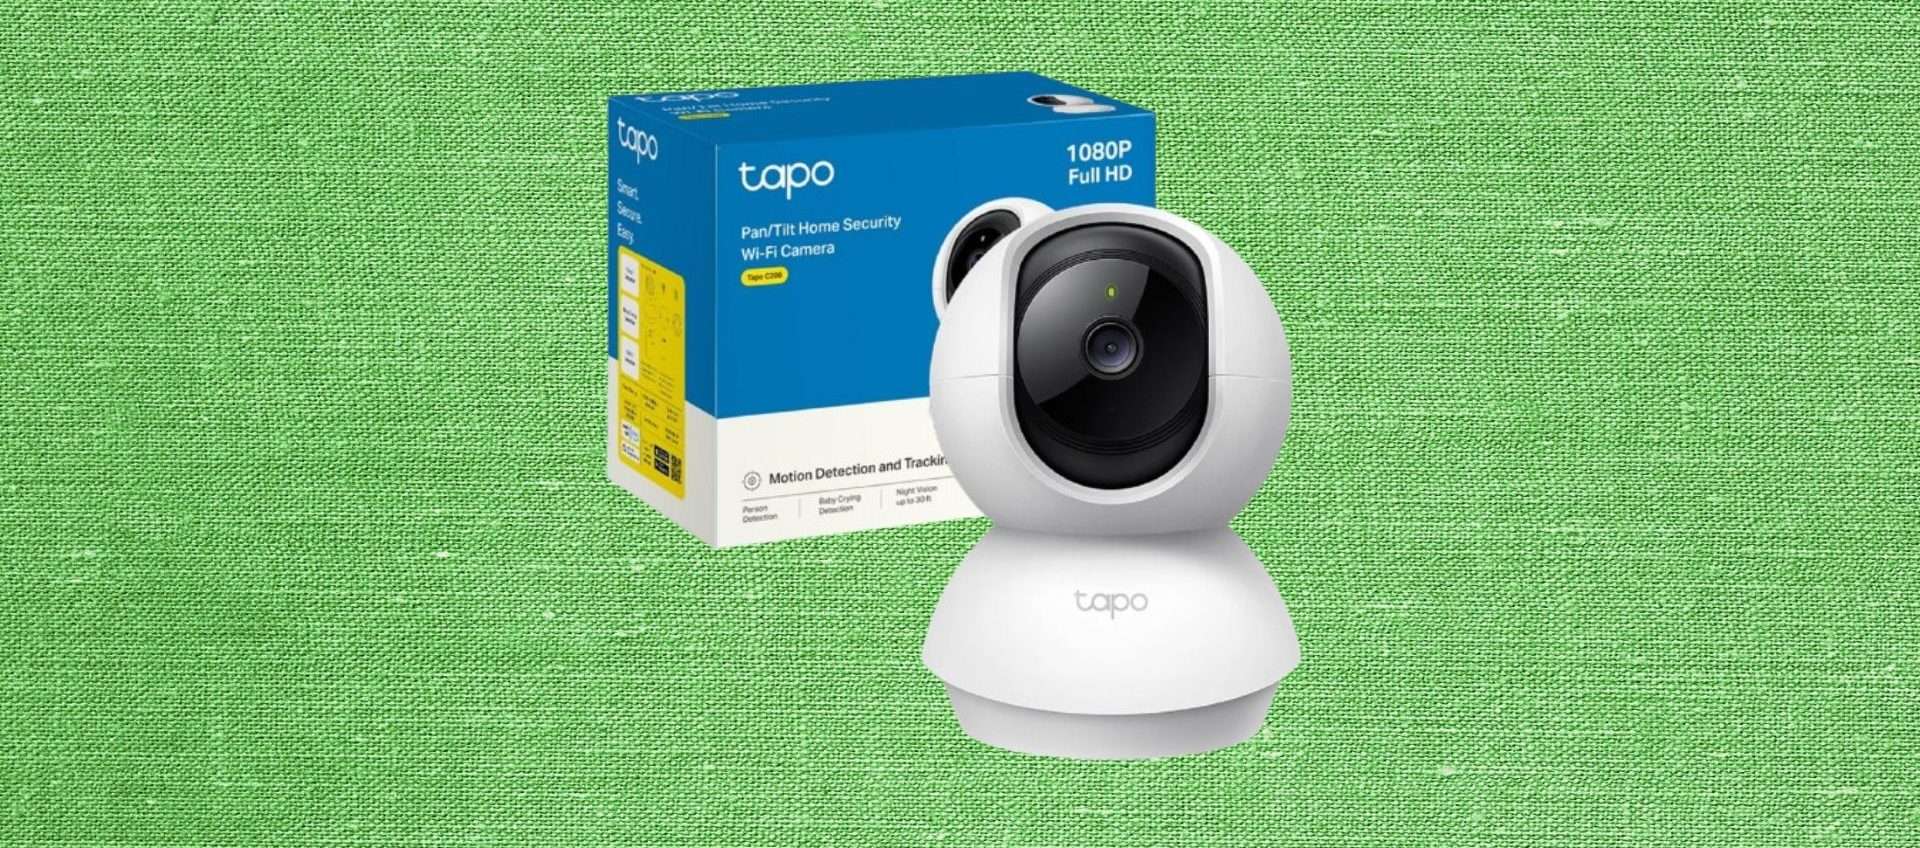 Tapo C200, telecamera di sicurezza ad un prezzo wow: tua a 25,99€